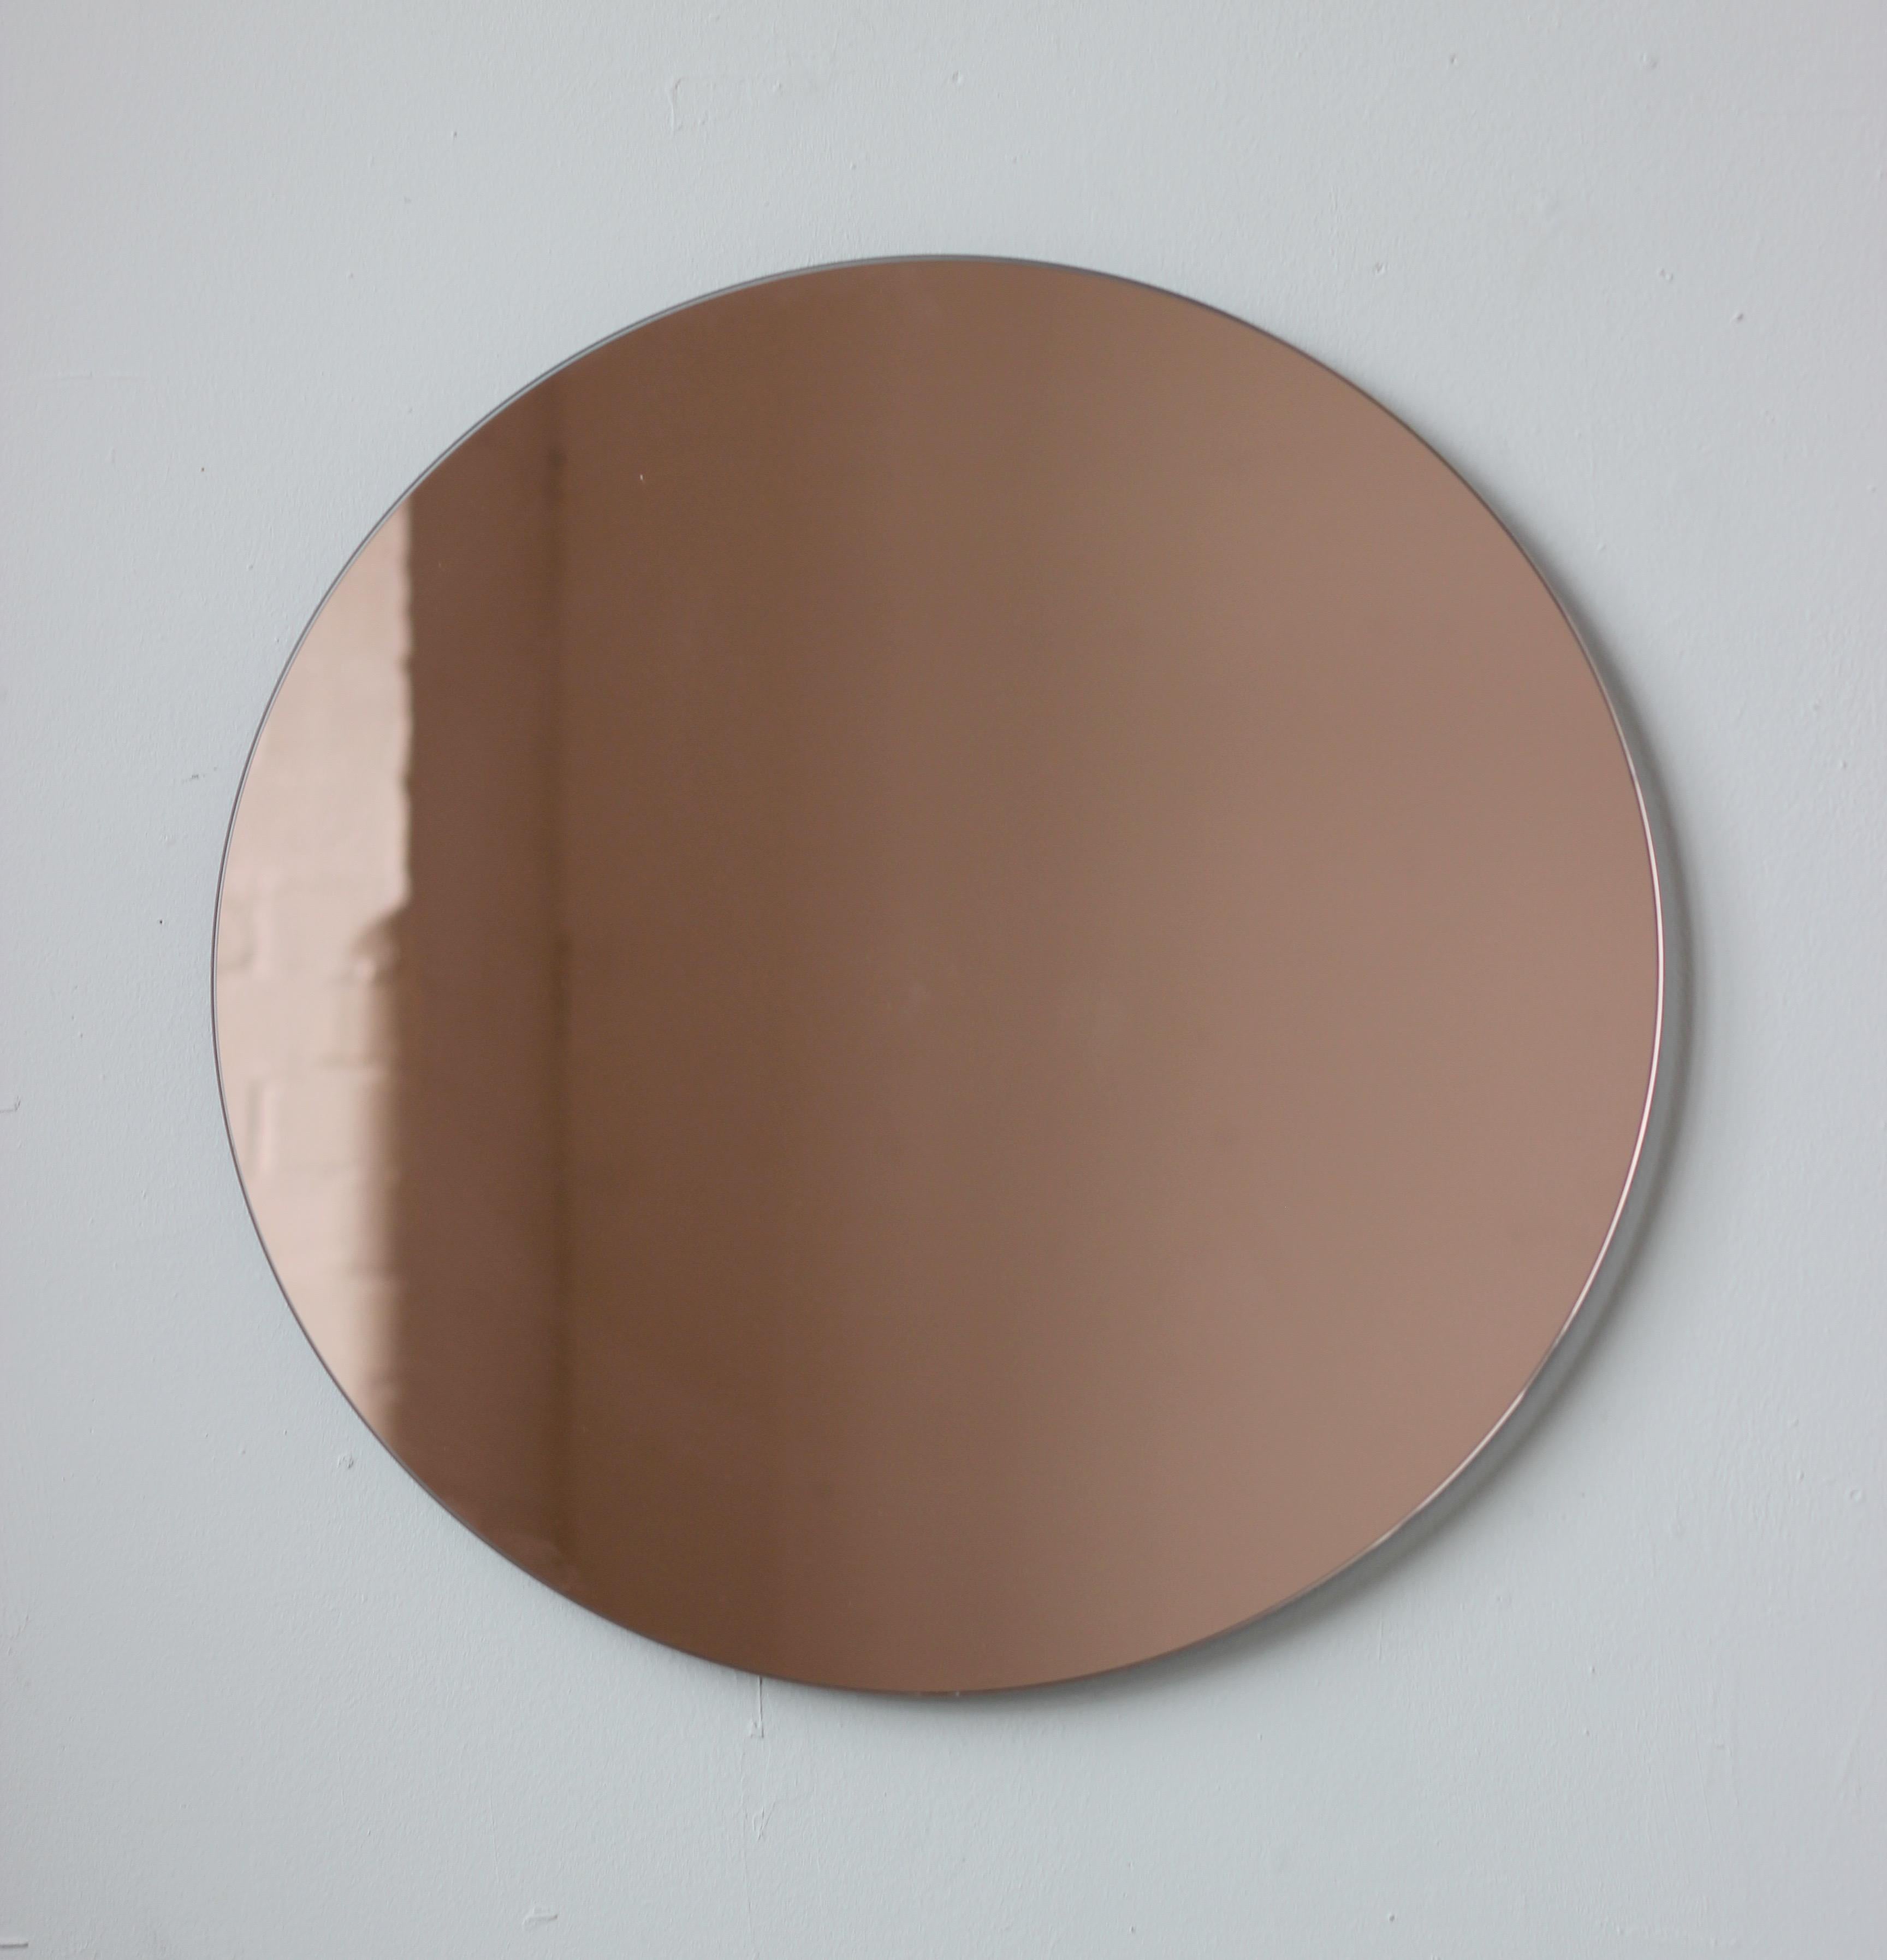 Charmanter und minimalistischer runder rahmenloser Spiegel in Roségold/Pfirsich mit Schwebeeffekt. Entworfen und hergestellt in London, UK.

Unsere Spiegel sind mit einem integrierten französischen Befestigungssystem (geteilte Leisten) ausgestattet,